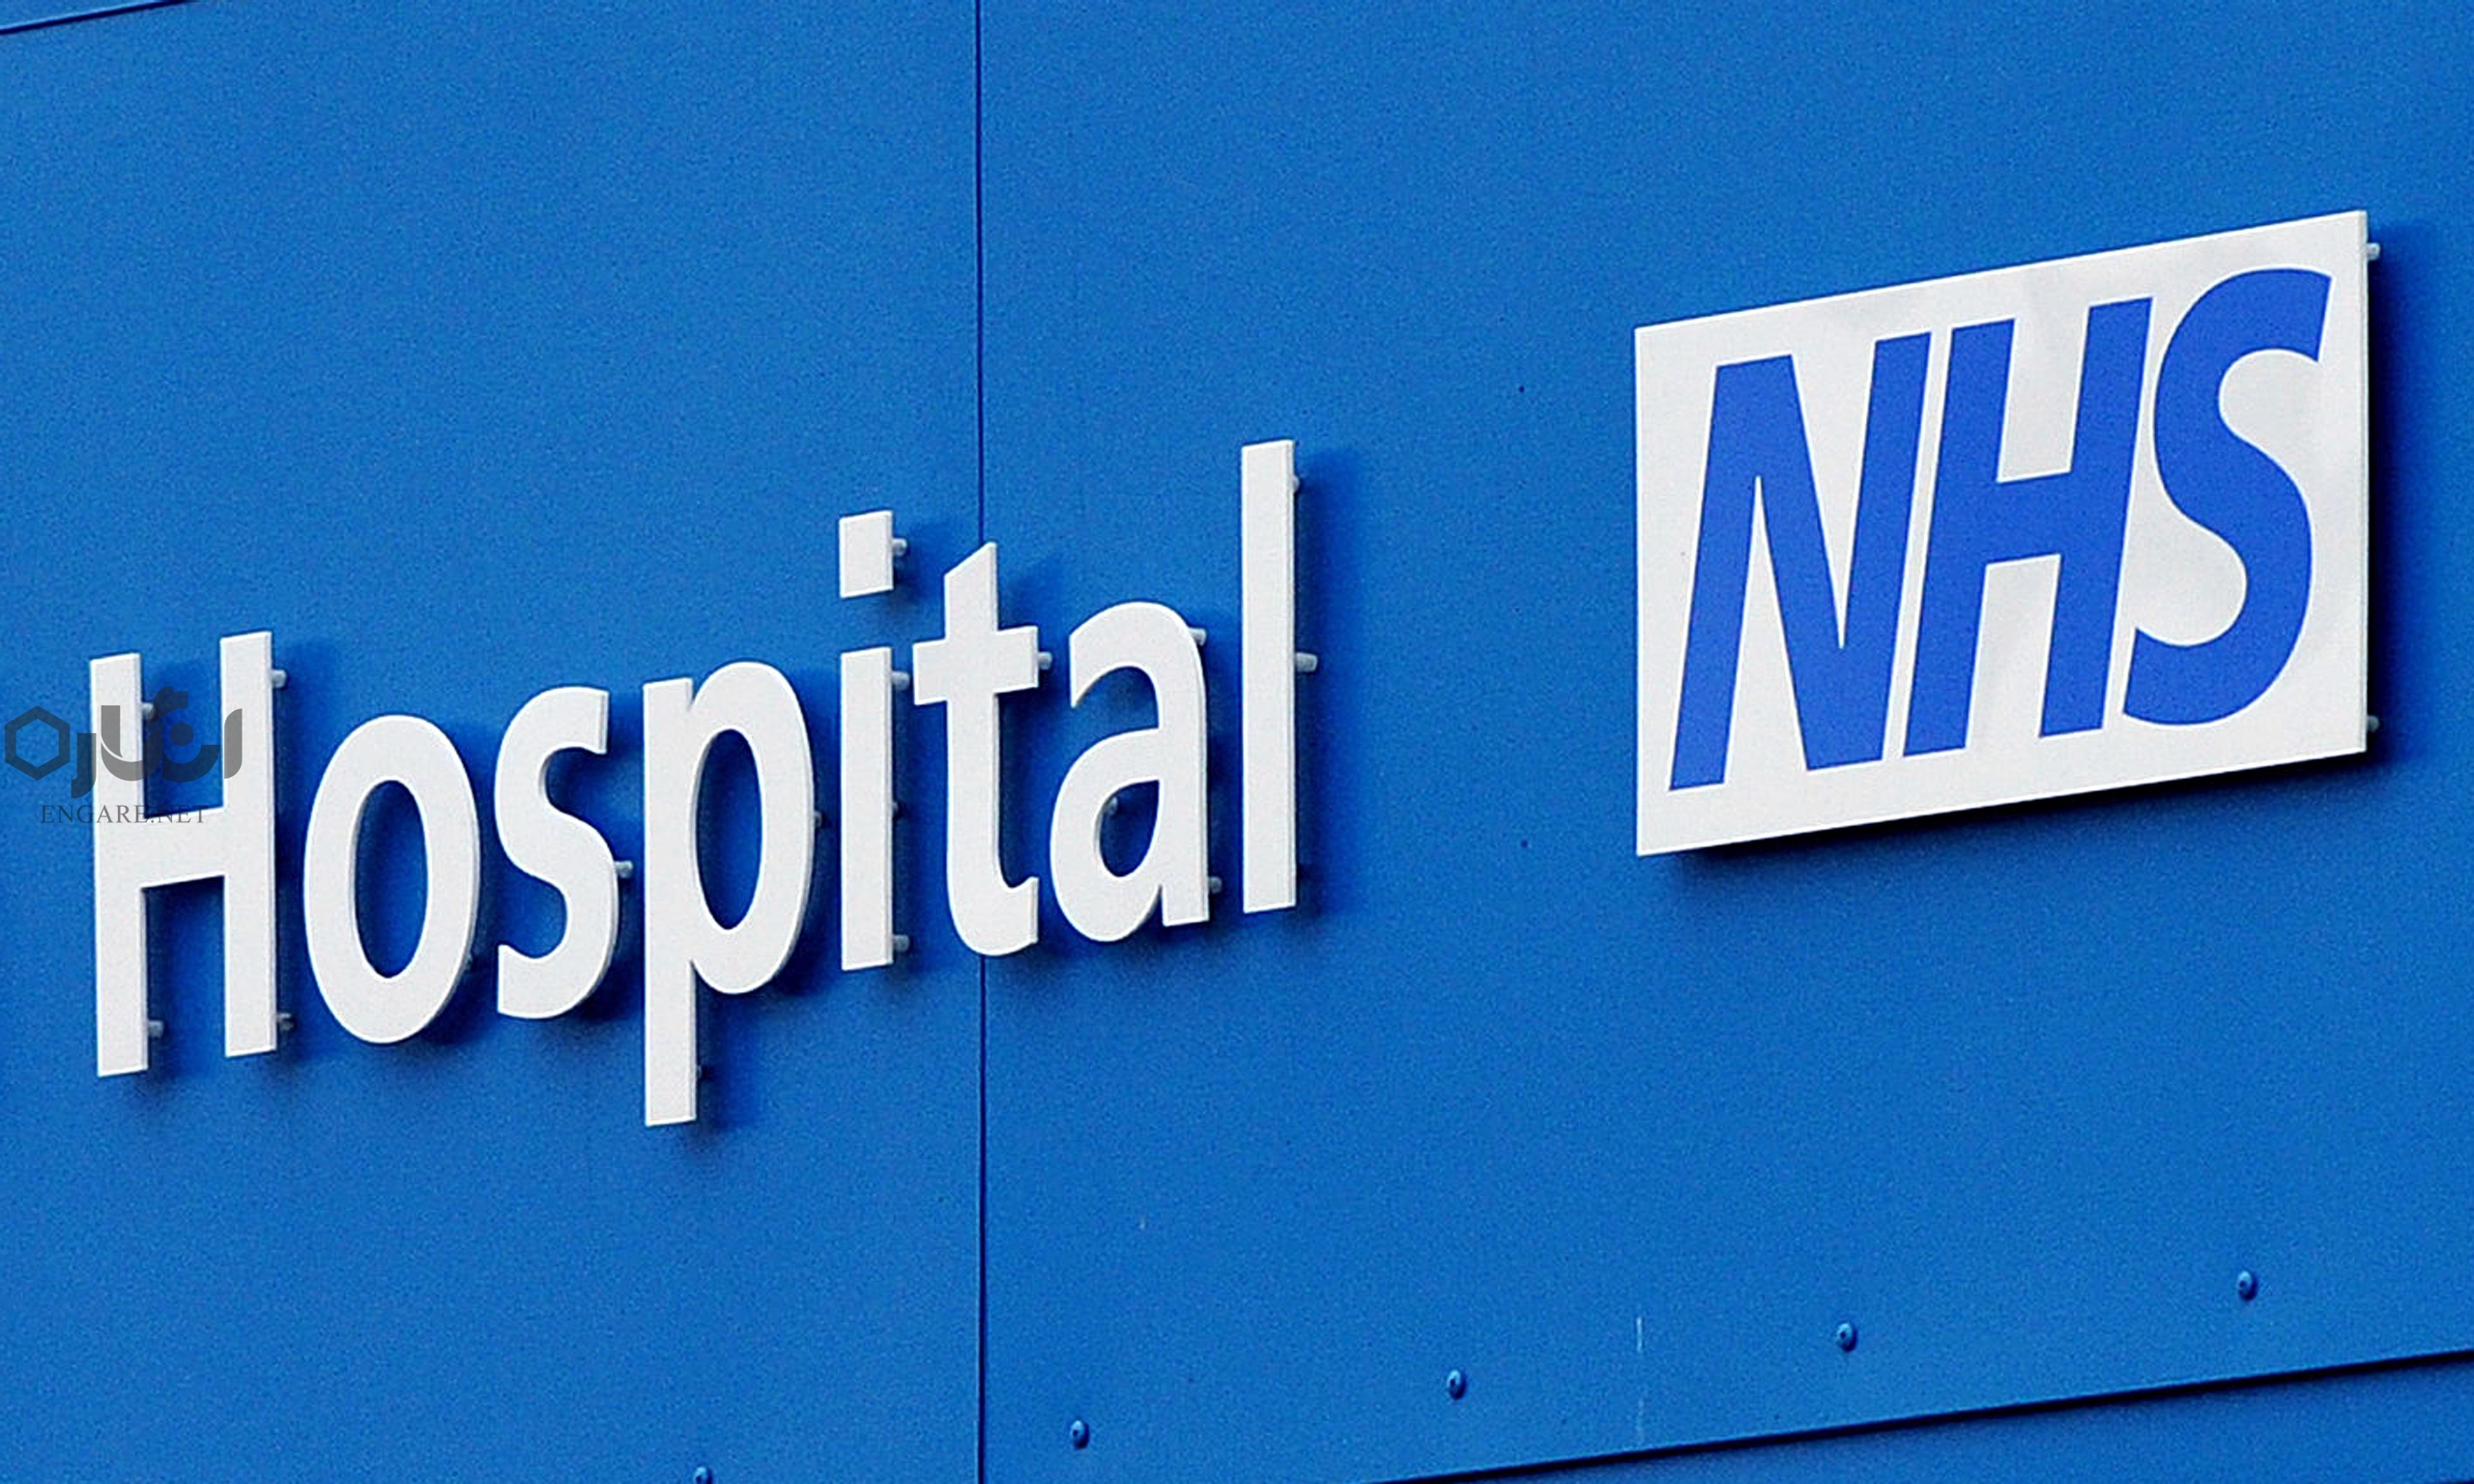 nhso - آیا NHS بهترین سیستم بهداشت و درمان در دنیا است؟ - نظام بیمه ای انگلستان, سیاست اجتماعی, رفاه اجتماعی, خدمات سلامت ملی, ترزا می, تحول نظام سلامت, بیمه انگلستان, بریتانیا, NHS, National Health Service